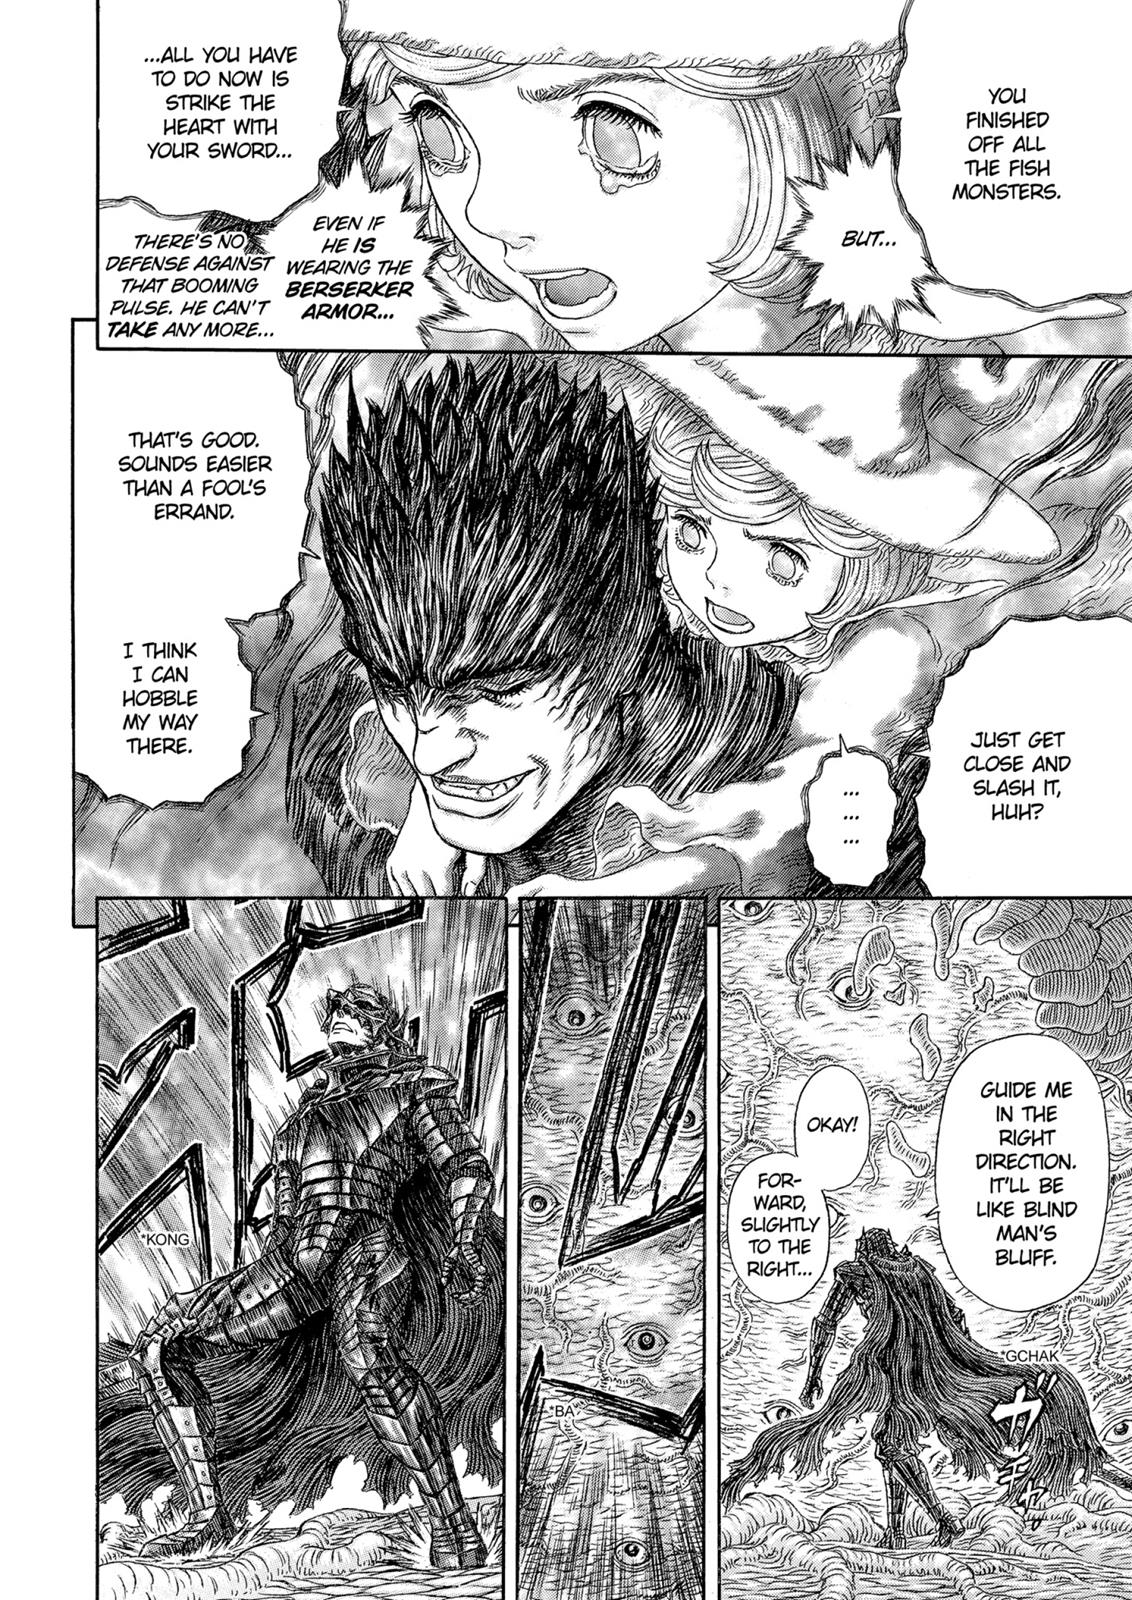 Berserk Manga Chapter 325 image 23